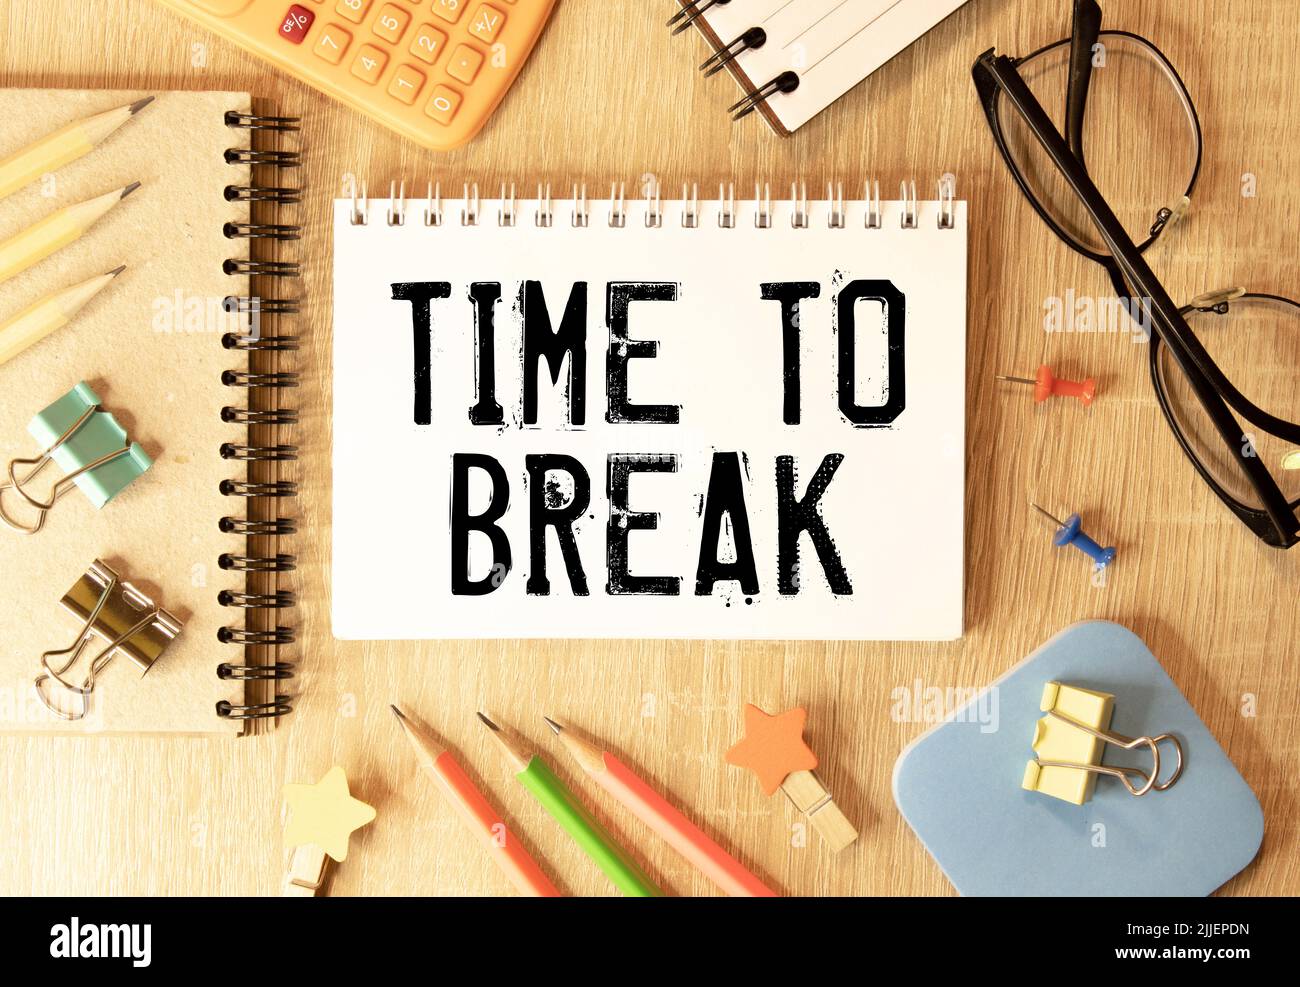 Time to Break testo scritto sulla pagina del notebook, matita a destra. Immagine del concetto motivazionale. Foto Stock